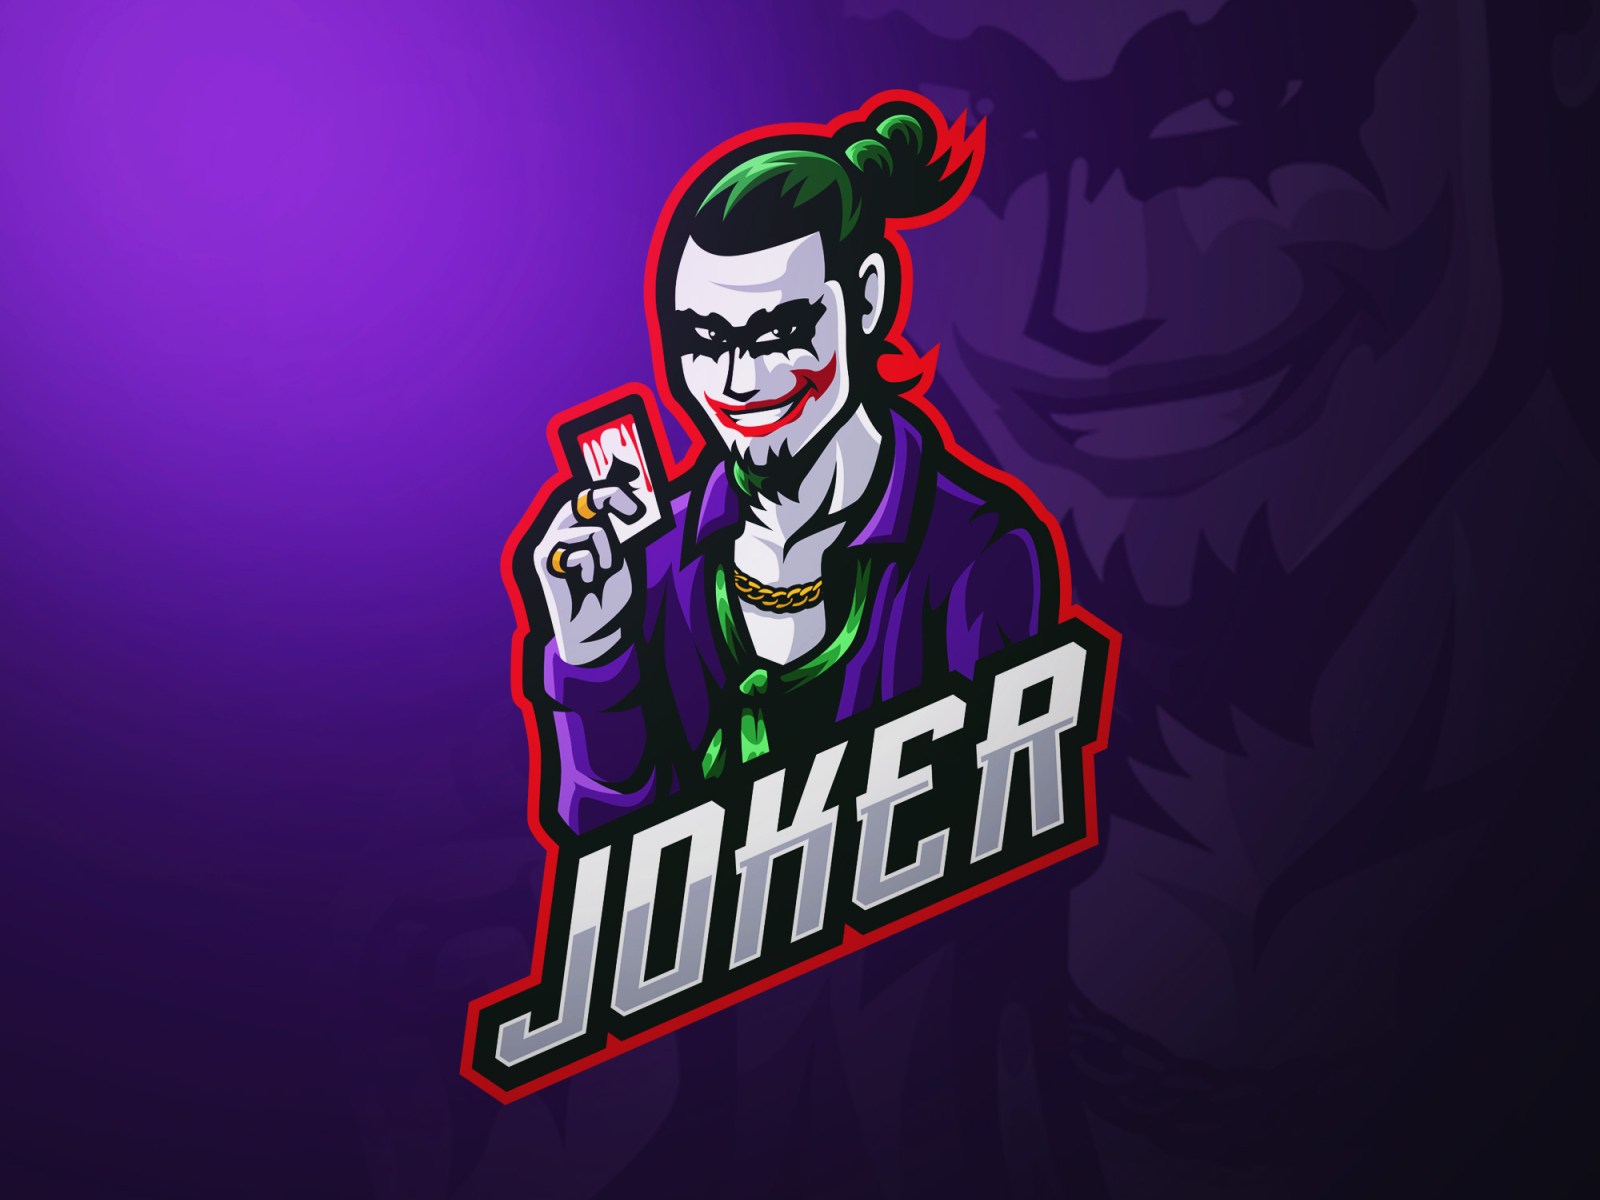 Joker Mascot Logo Design by MrvnDesigns on Dribbble